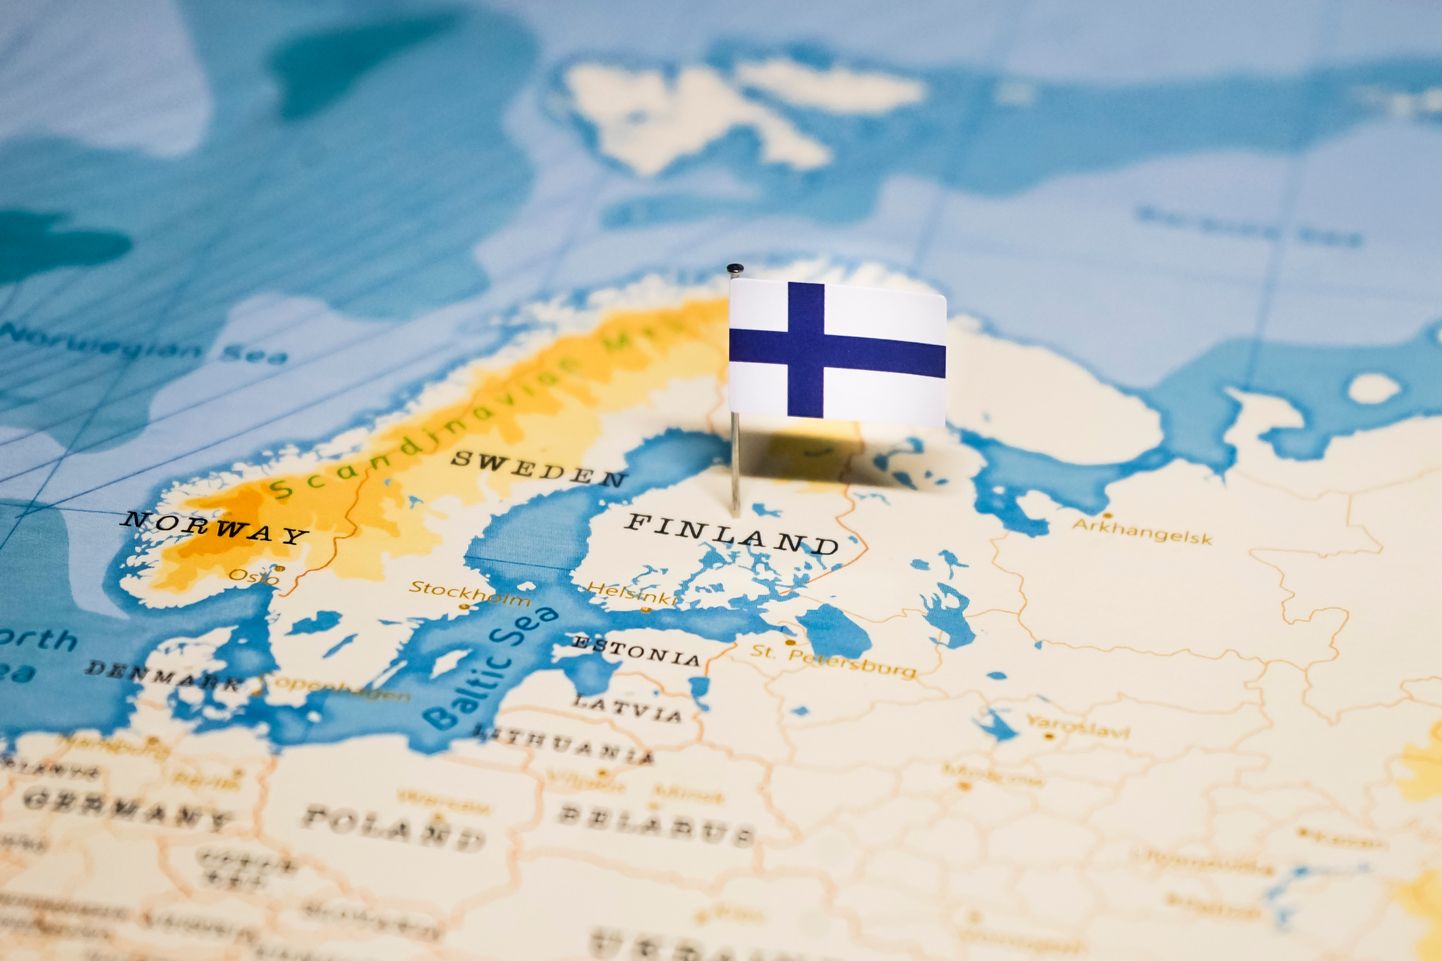 Soome kaardil.